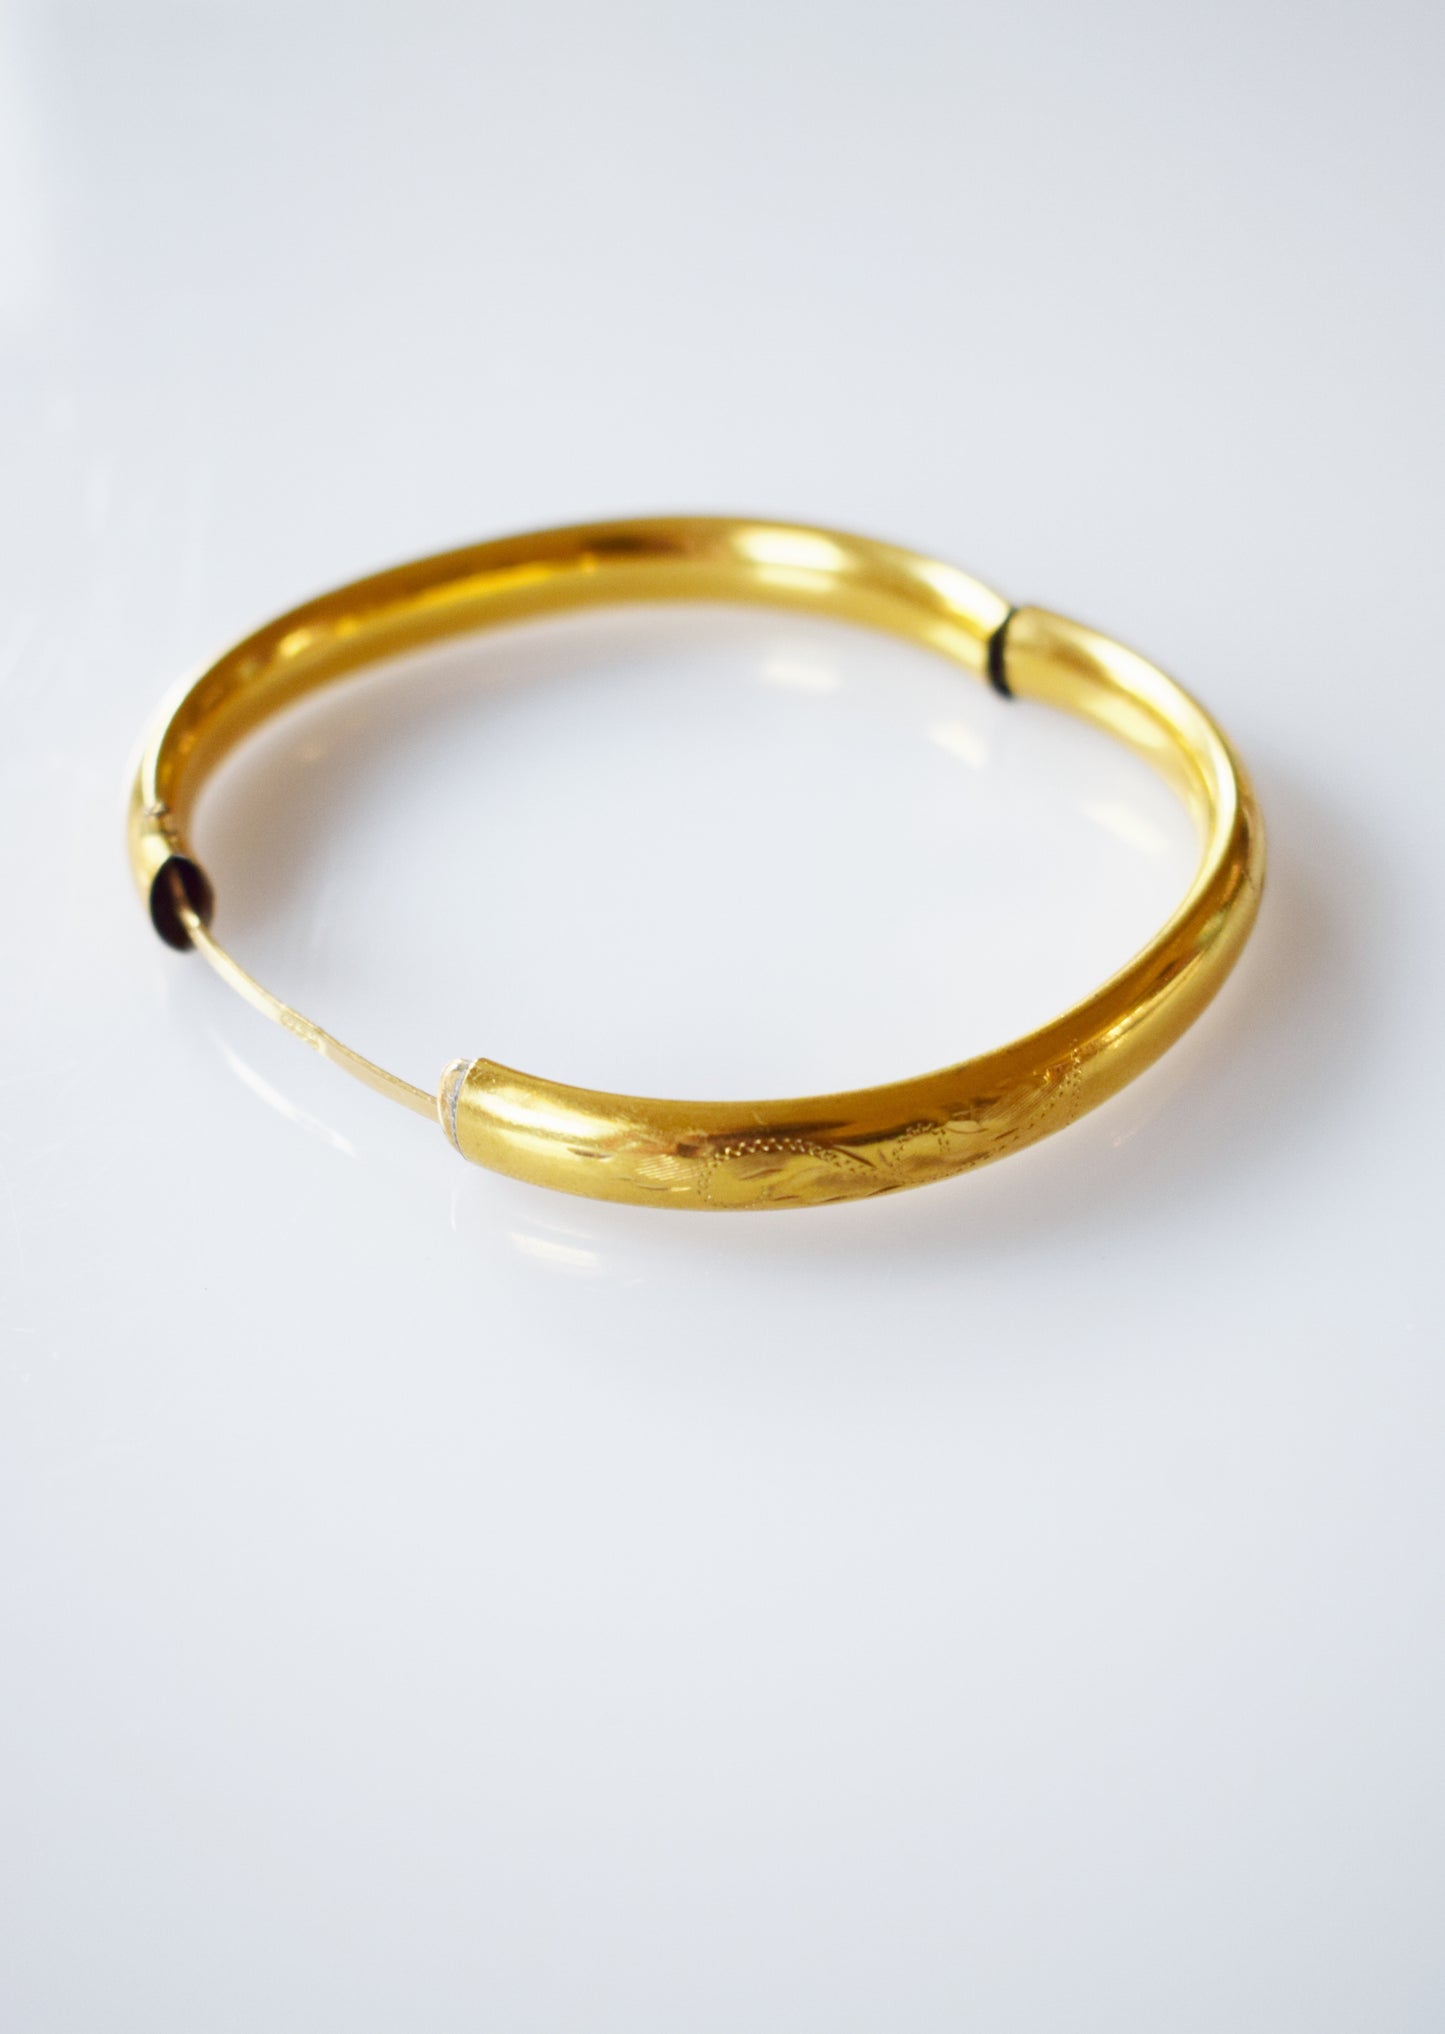 Vintage Gold-filled Bangle Bracelet | Etched Floral Design